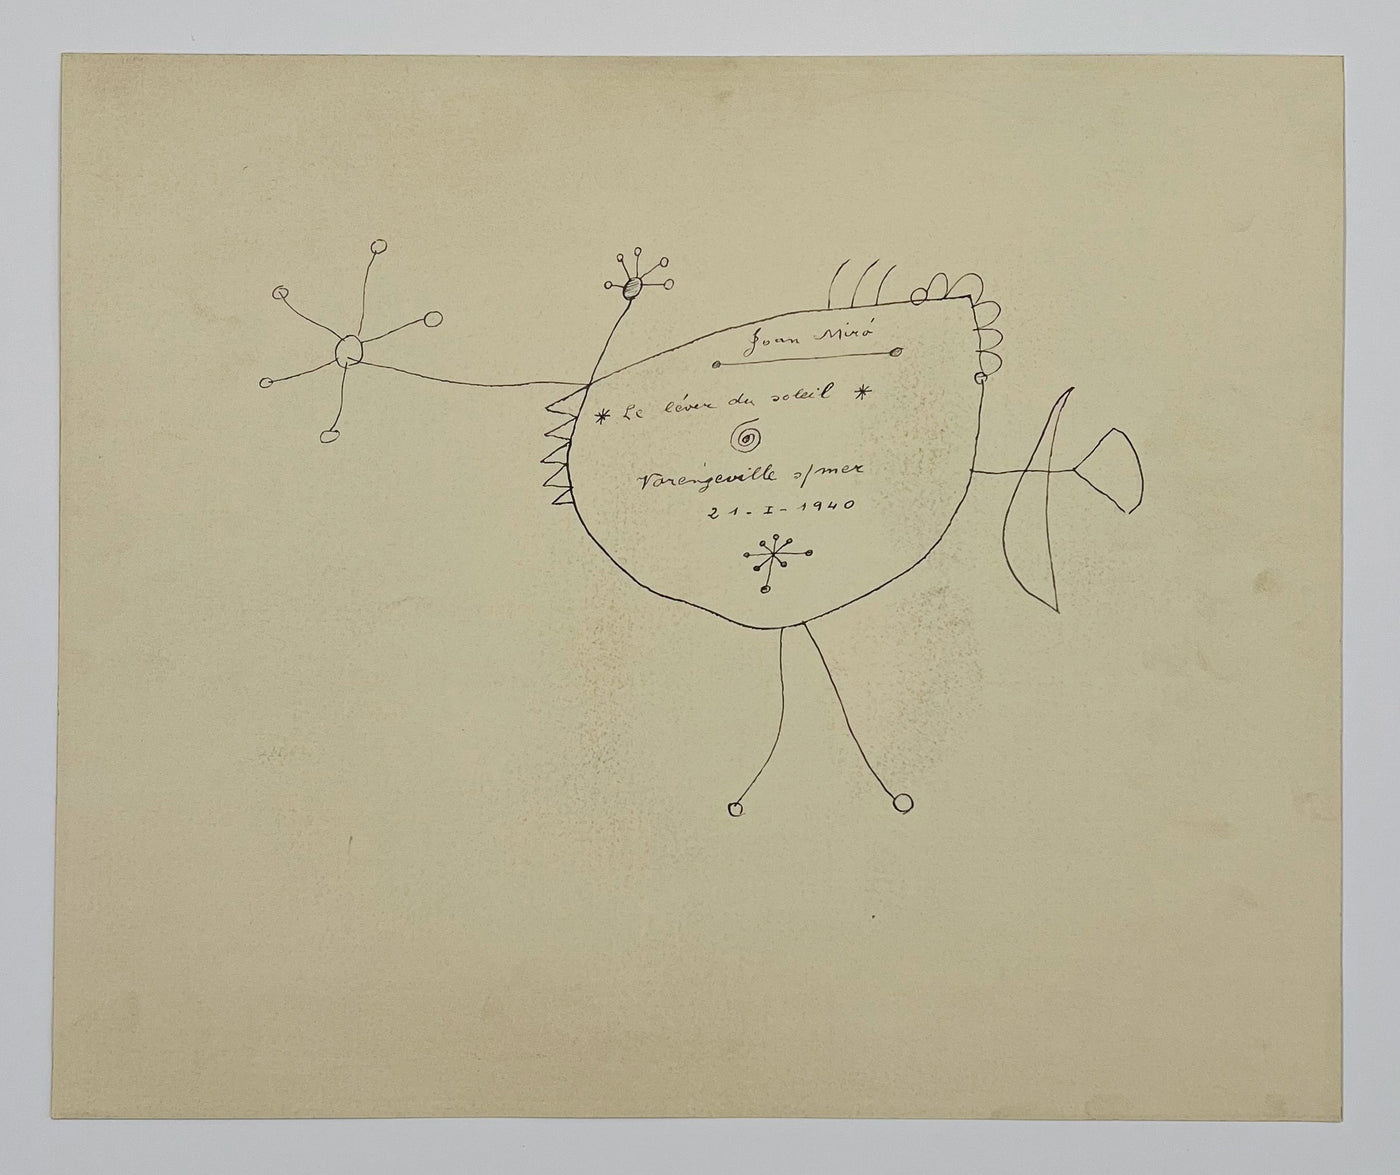 Joan Miro (after) Le Lever du soleil (Sunrise), Plate I (Cramer No. 58) 1959